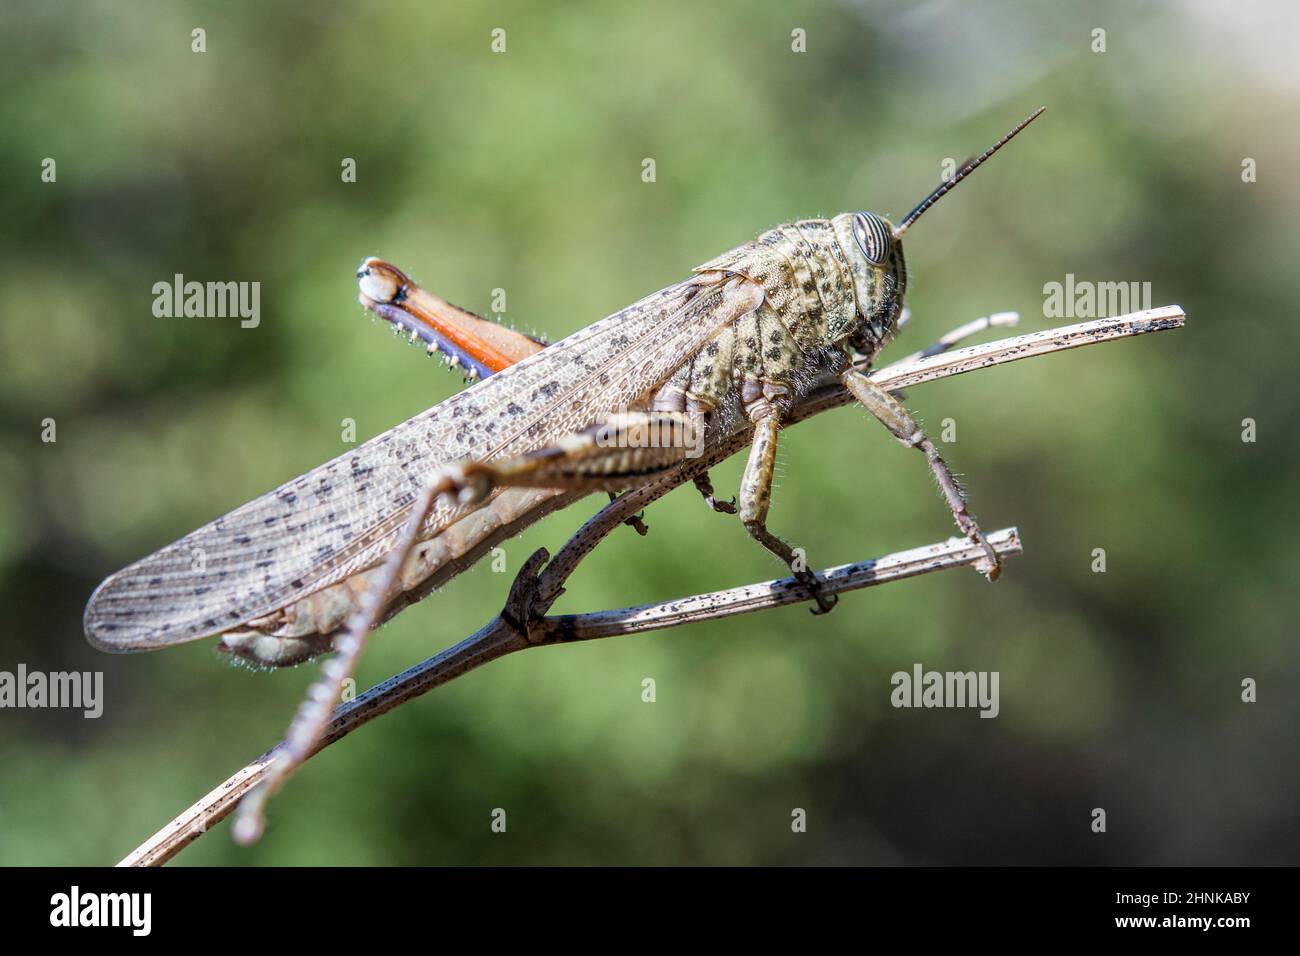 Egyptian grasshopper or Egyptian locust (Anacridium aegyptium). Stock Photo